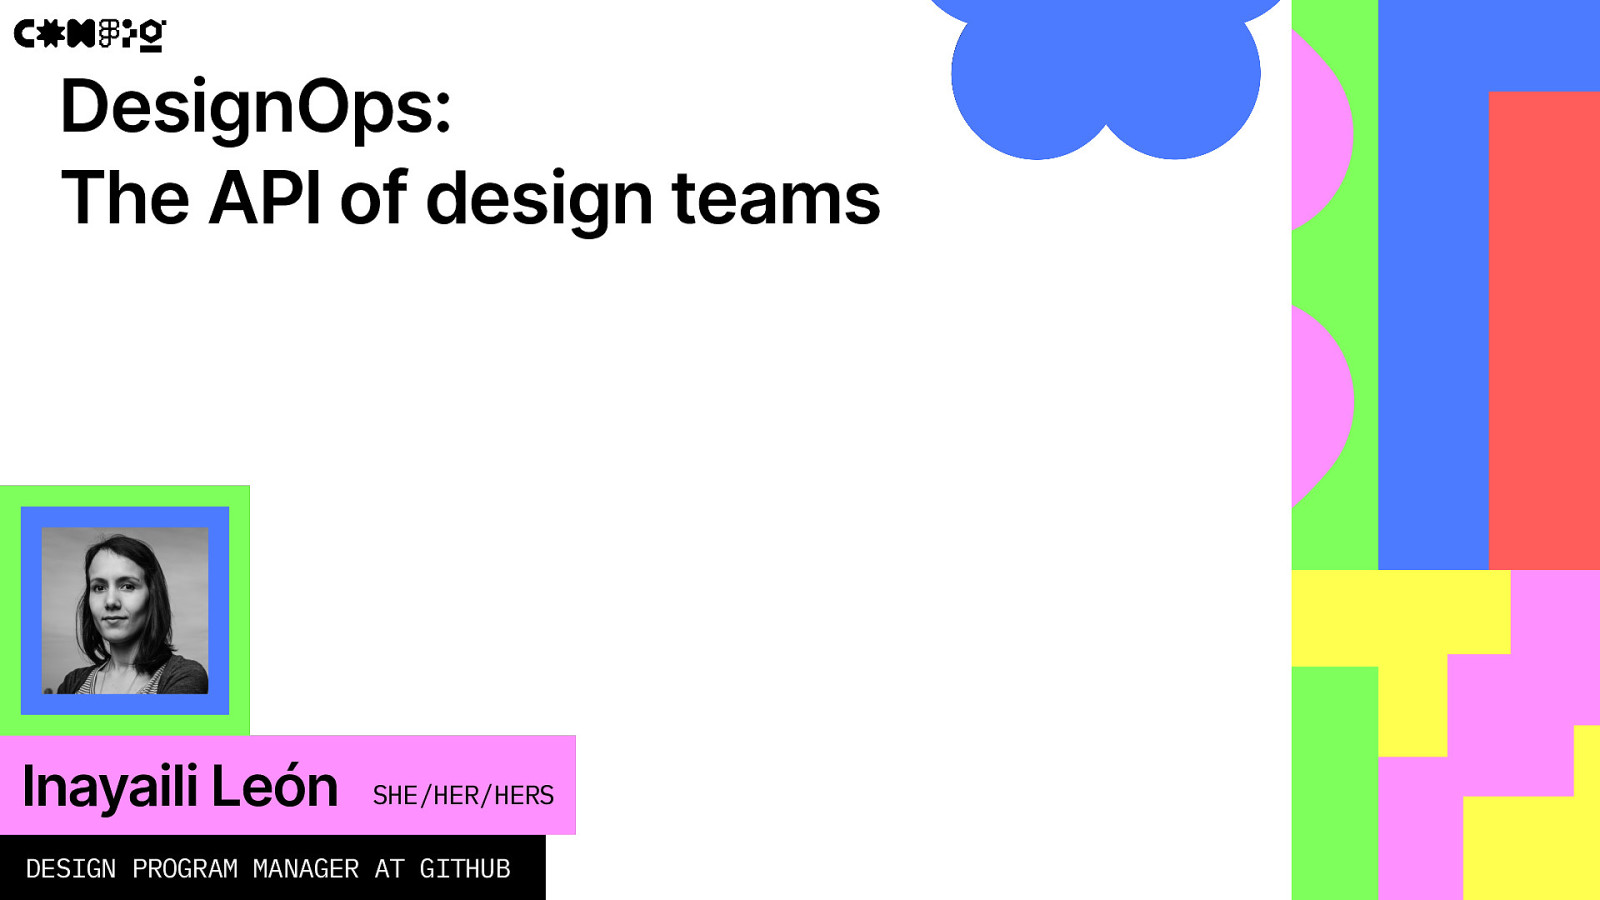 DesignOps: The API of design teams by Inayaili León